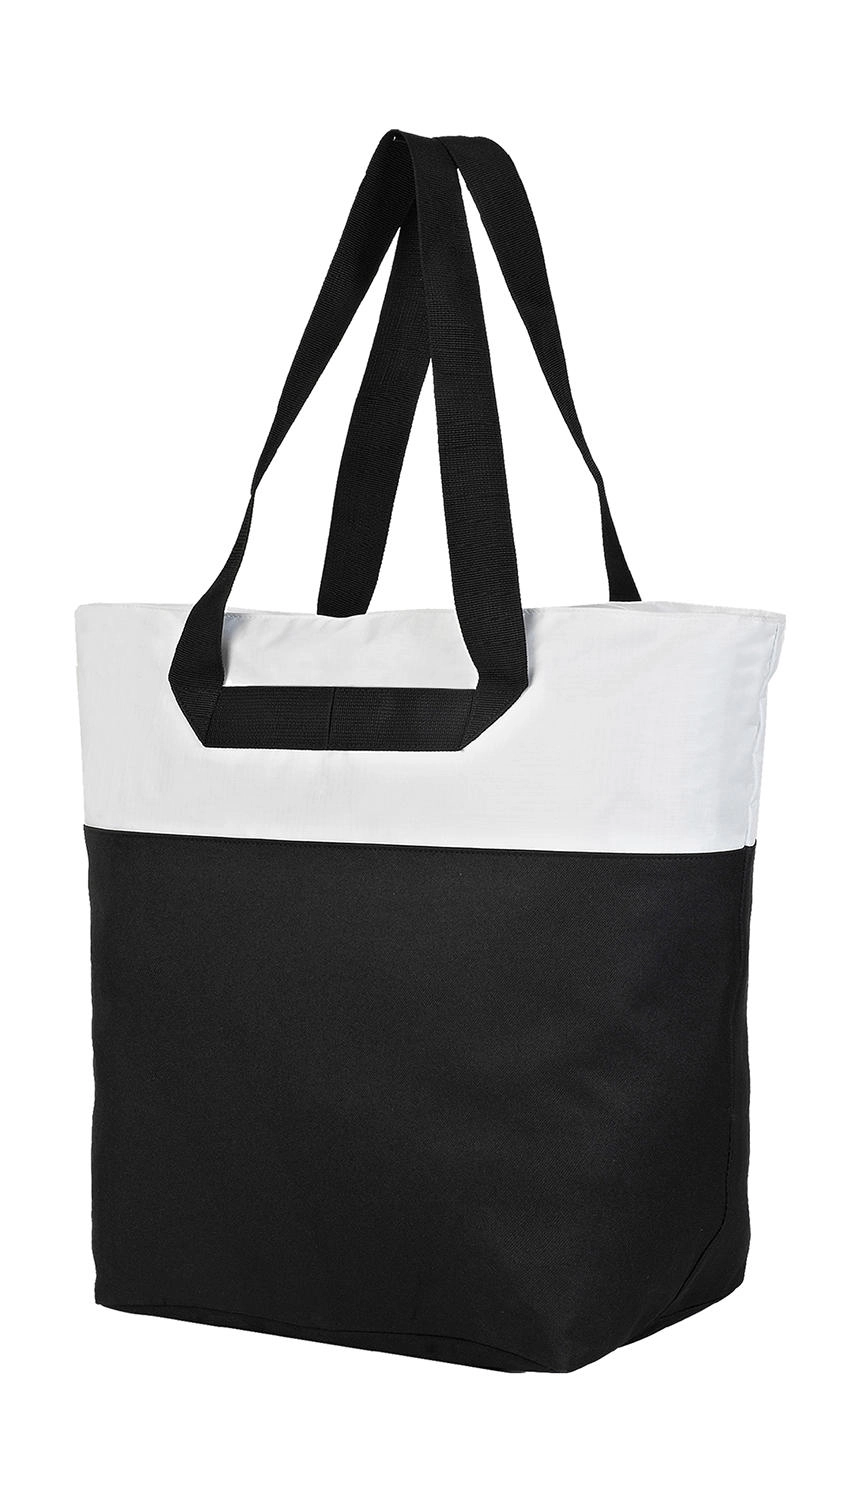 Tenerife Beach and Leisure Bag zum Besticken und Bedrucken in der Farbe Black/White mit Ihren Logo, Schriftzug oder Motiv.